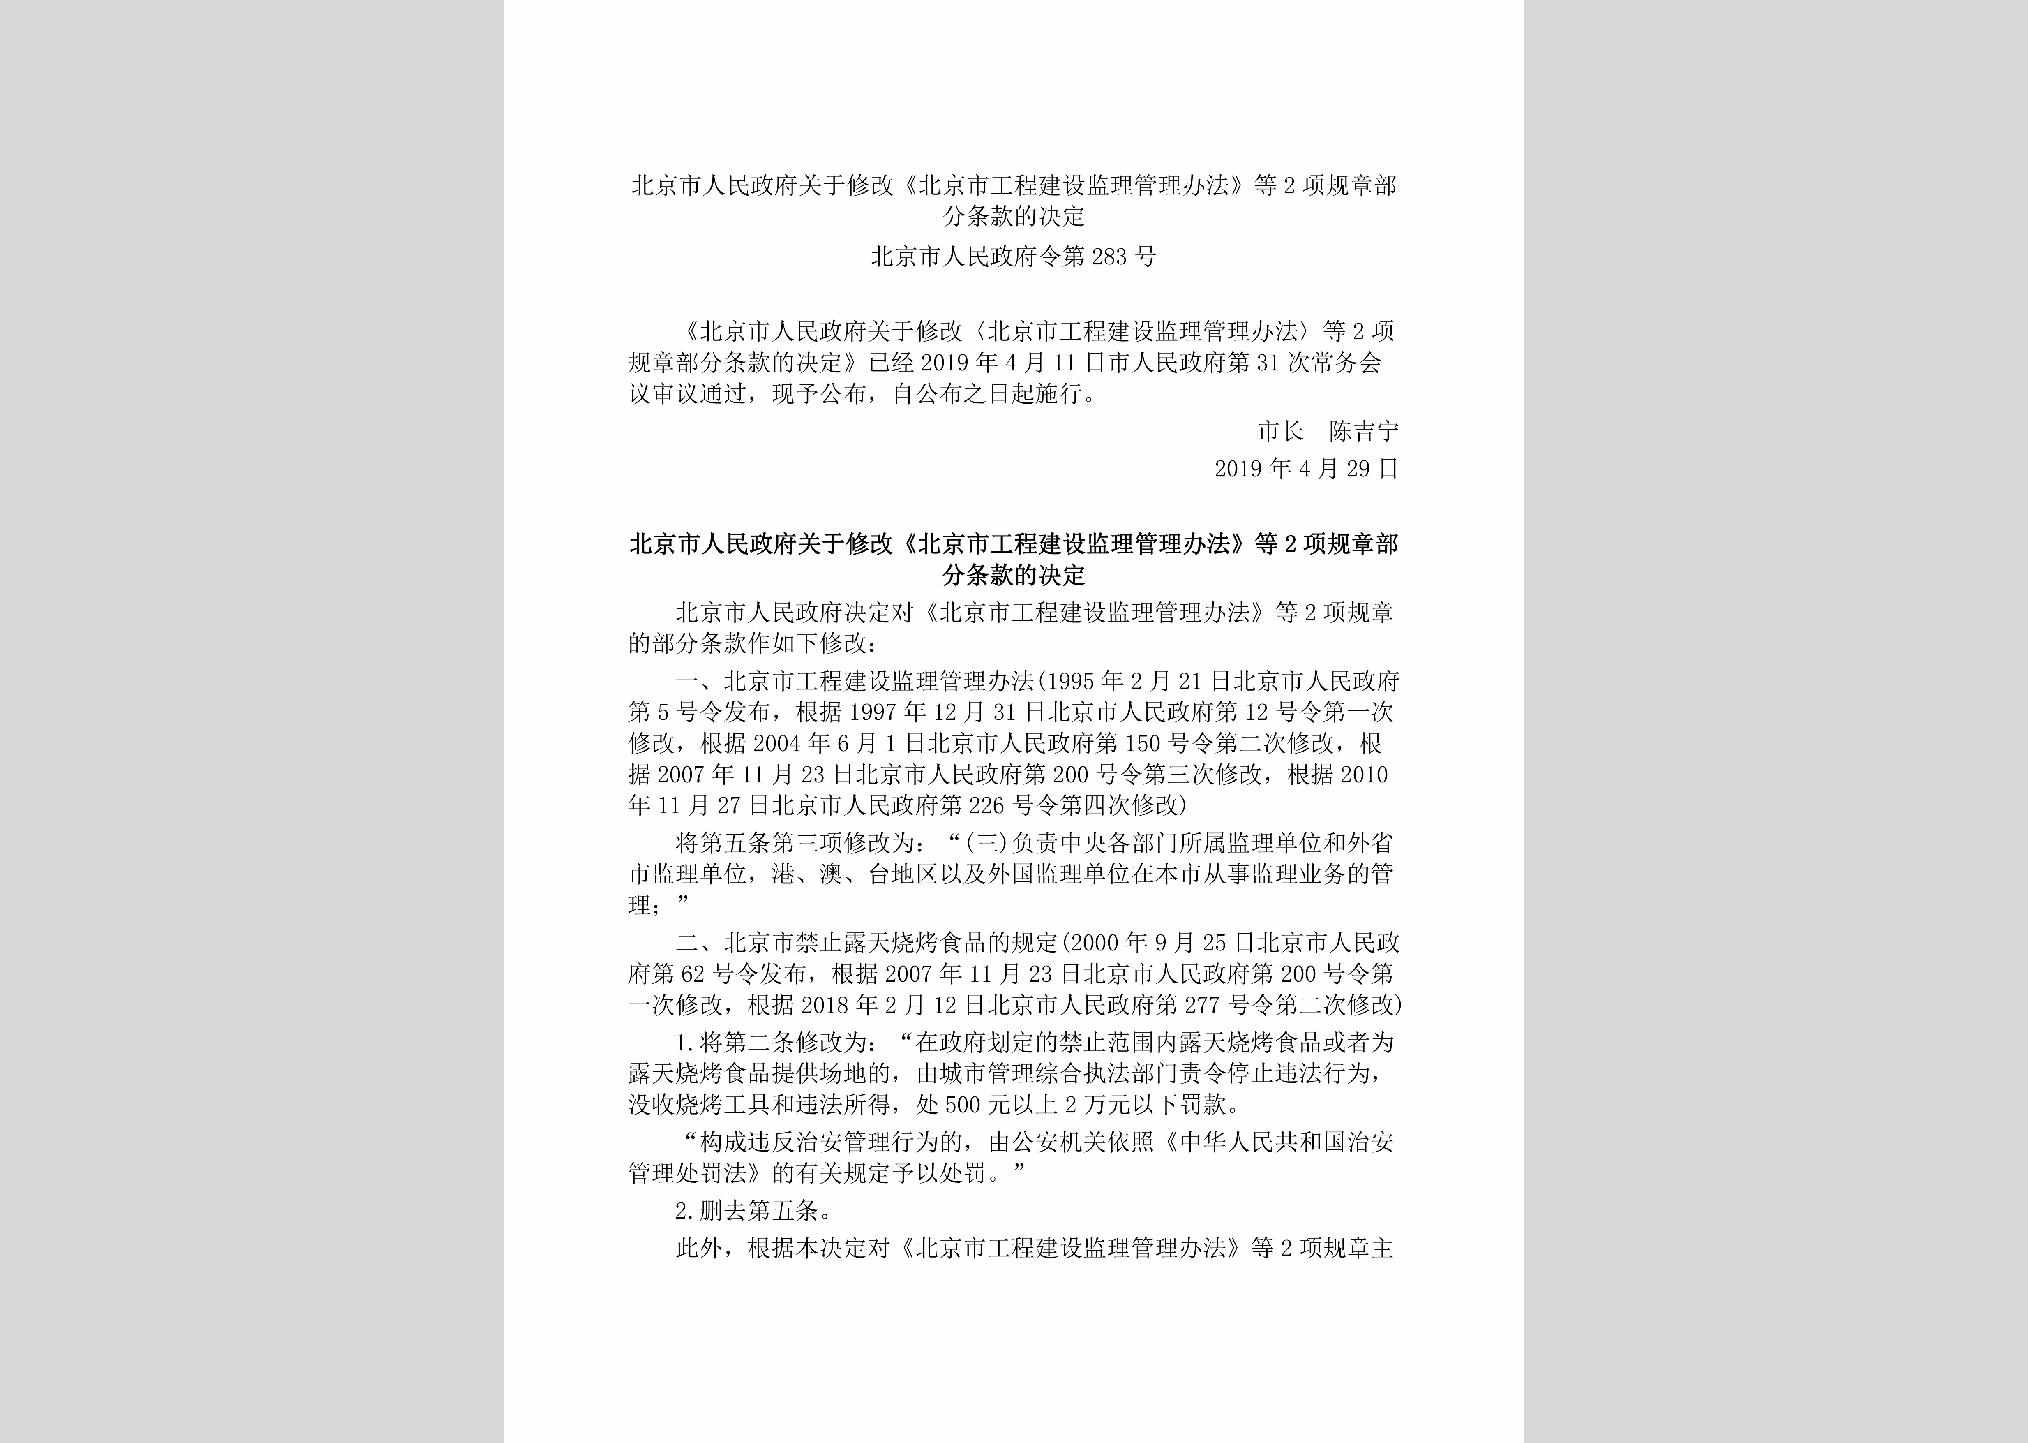 北京市人民政府令[2019]283号：北京市人民政府关于修改《北京市工程建设监理管理办法》等2项规章部分条款的决定